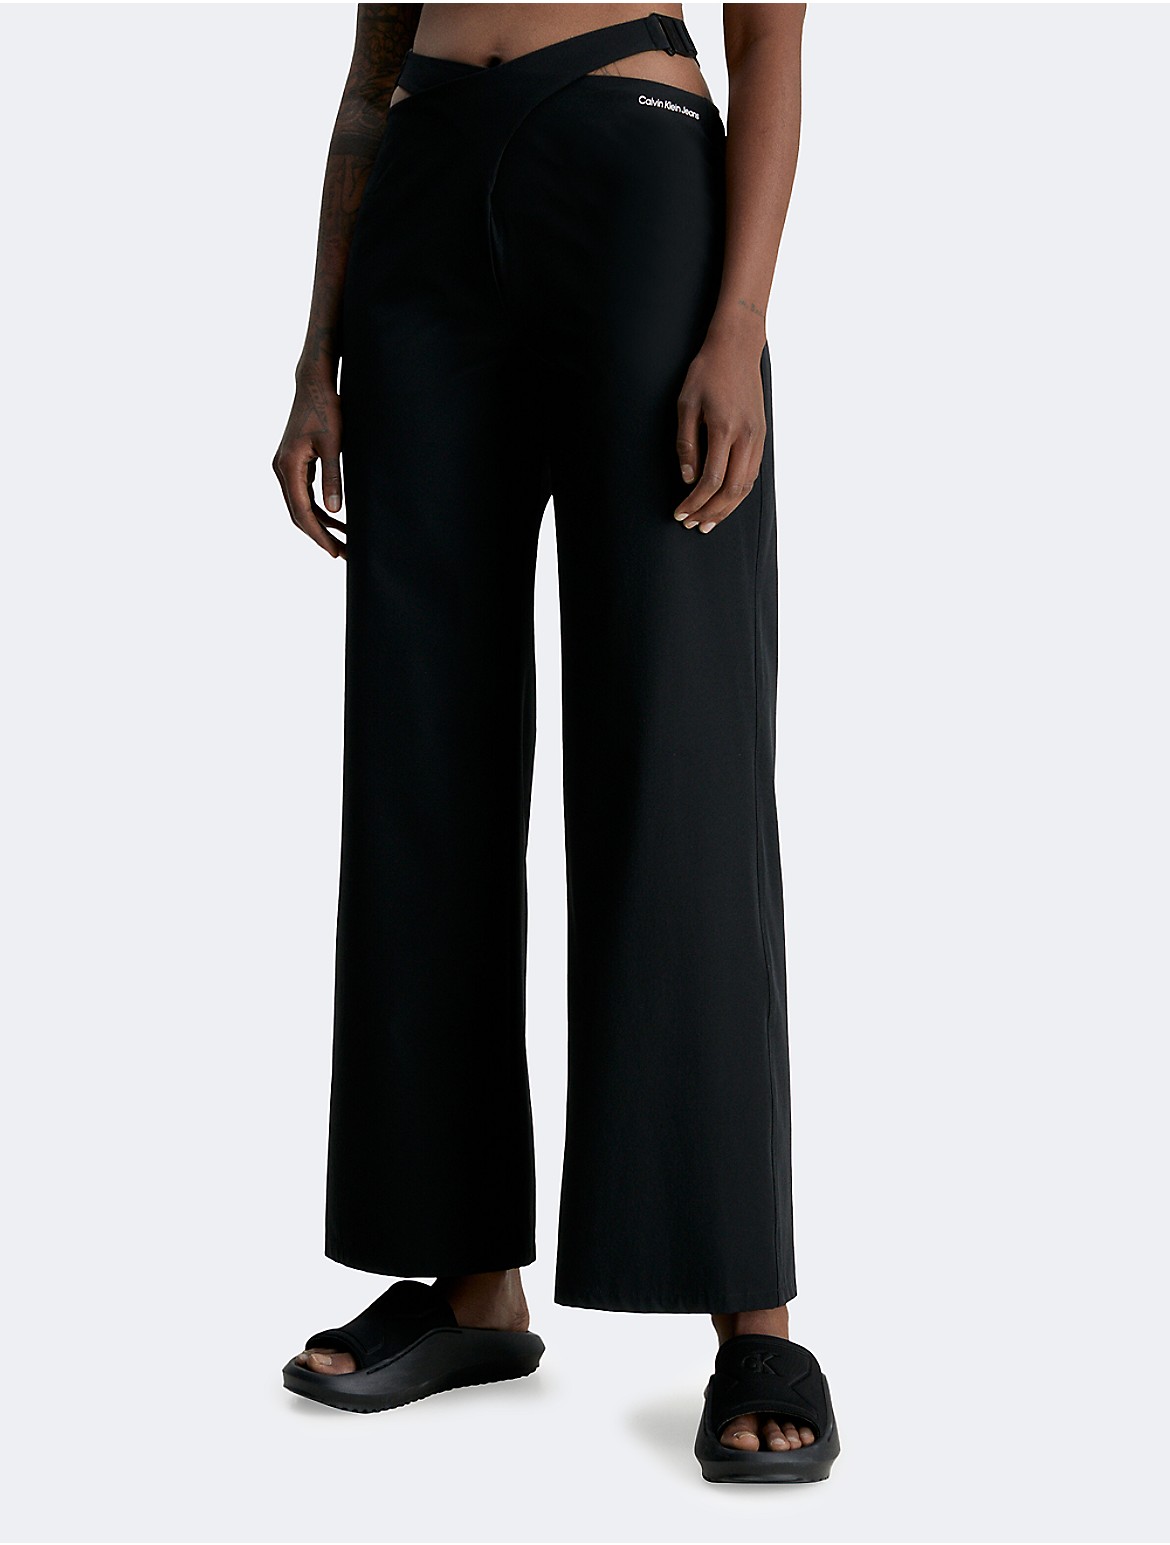 Calvin Klein Women's Black Cut Out Utility Pants - Black - M